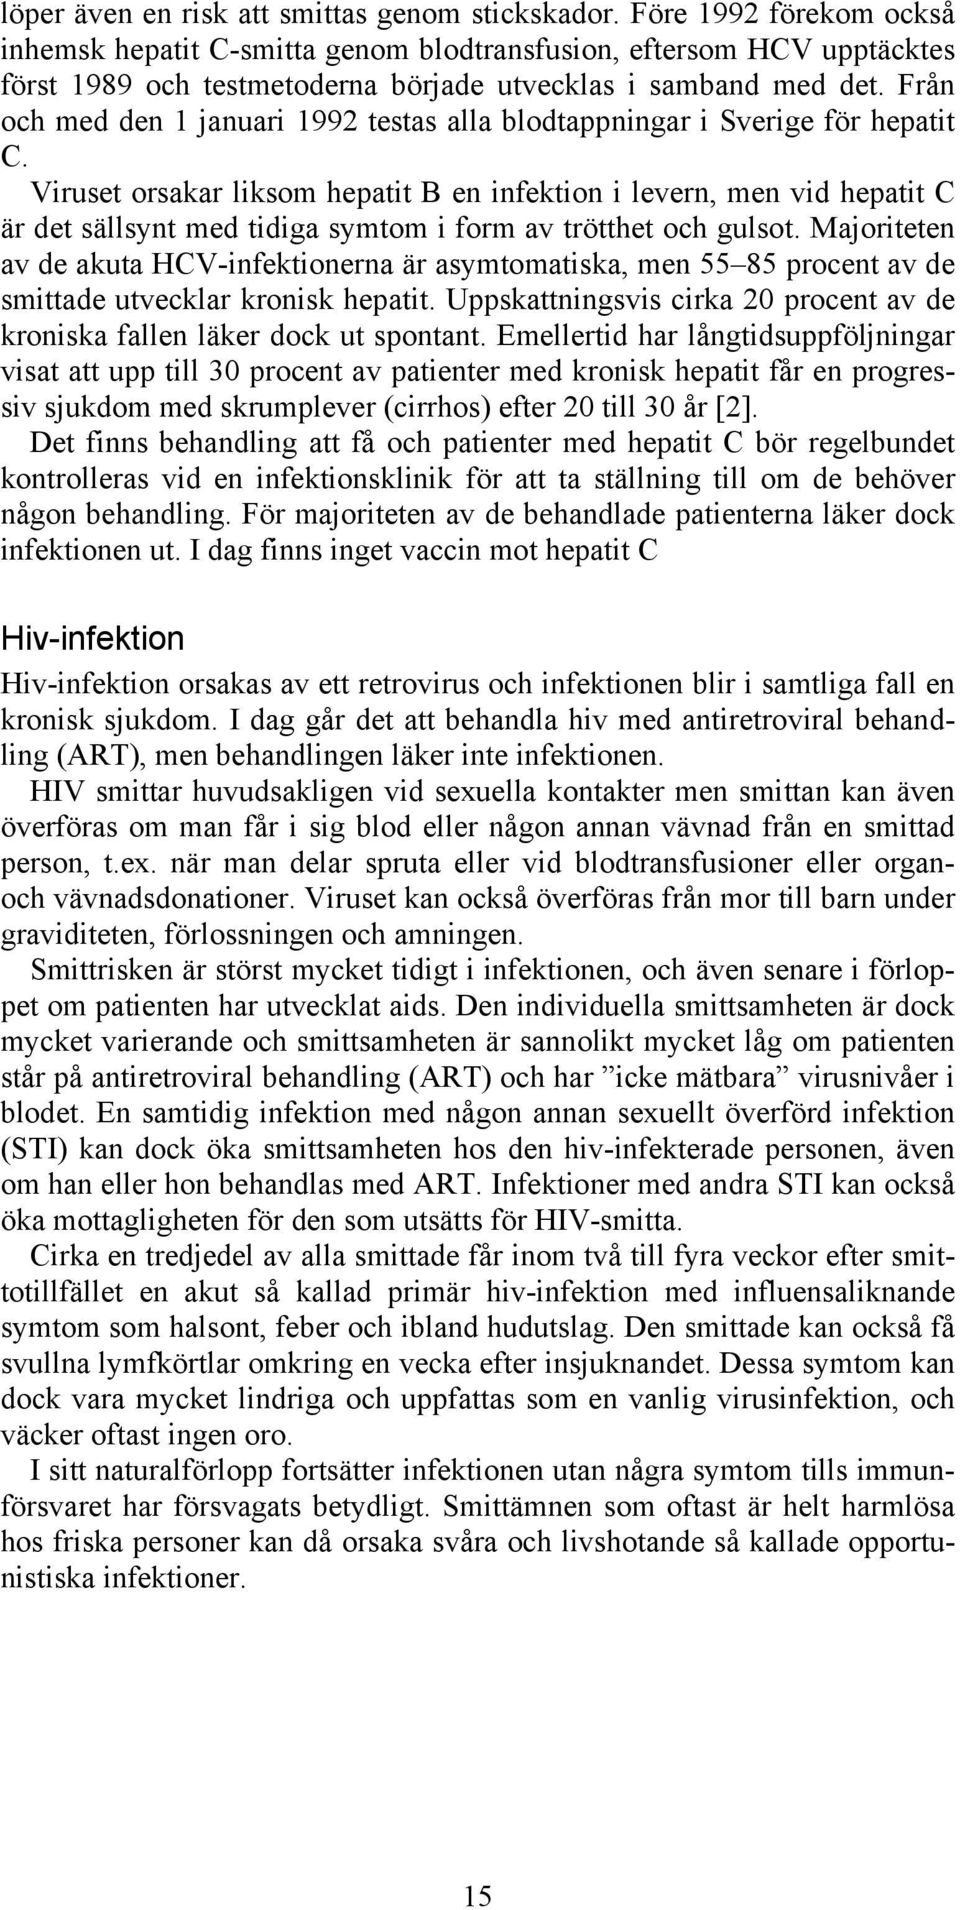 Från och med den 1 januari 1992 testas alla blodtappningar i Sverige för hepatit C.